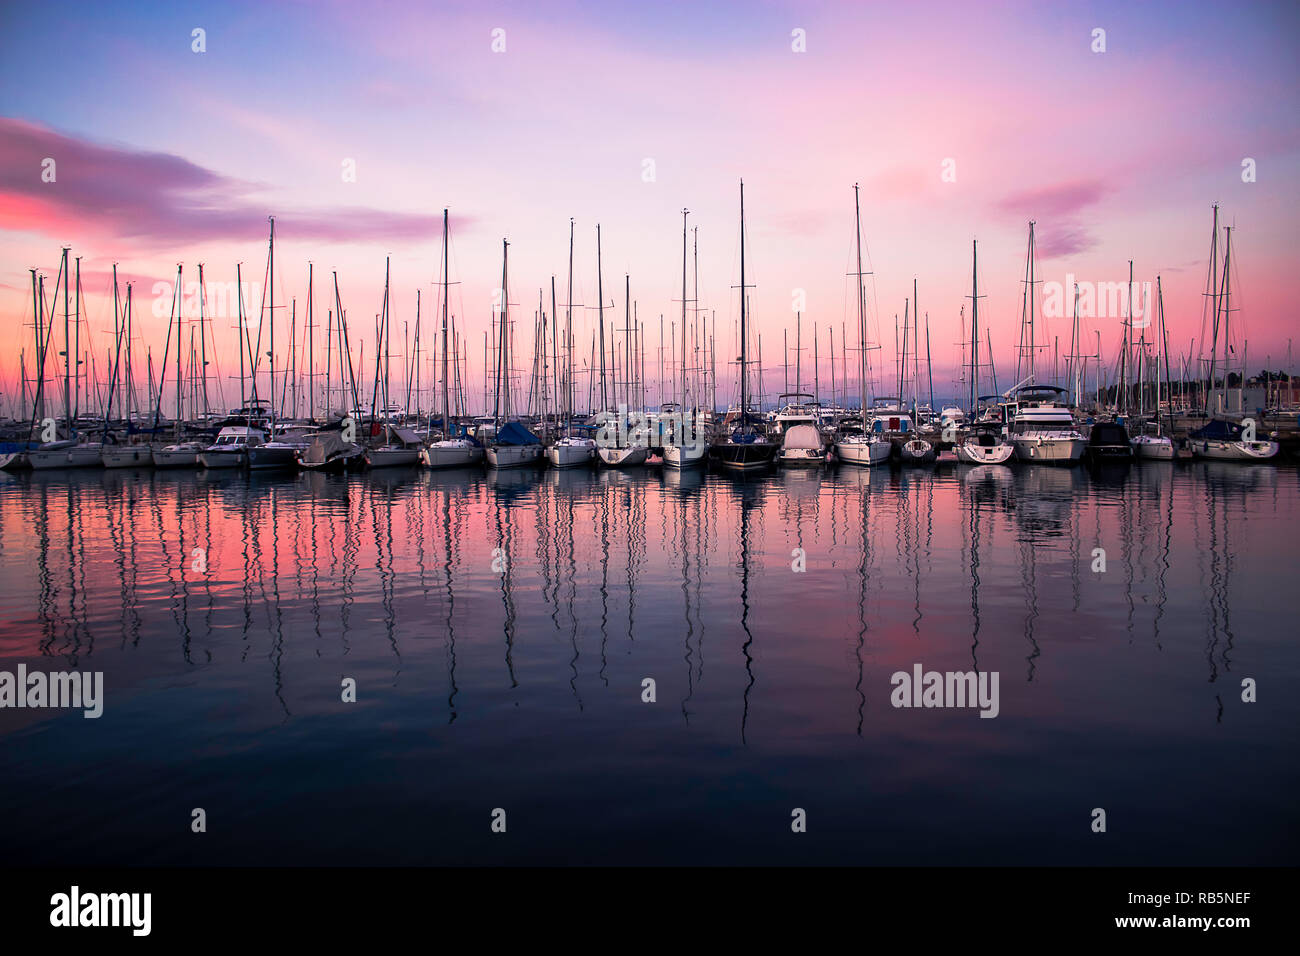 Segeln Boote in der Marina mit einer schönen lila Sonnenuntergang verankert. Stockfoto